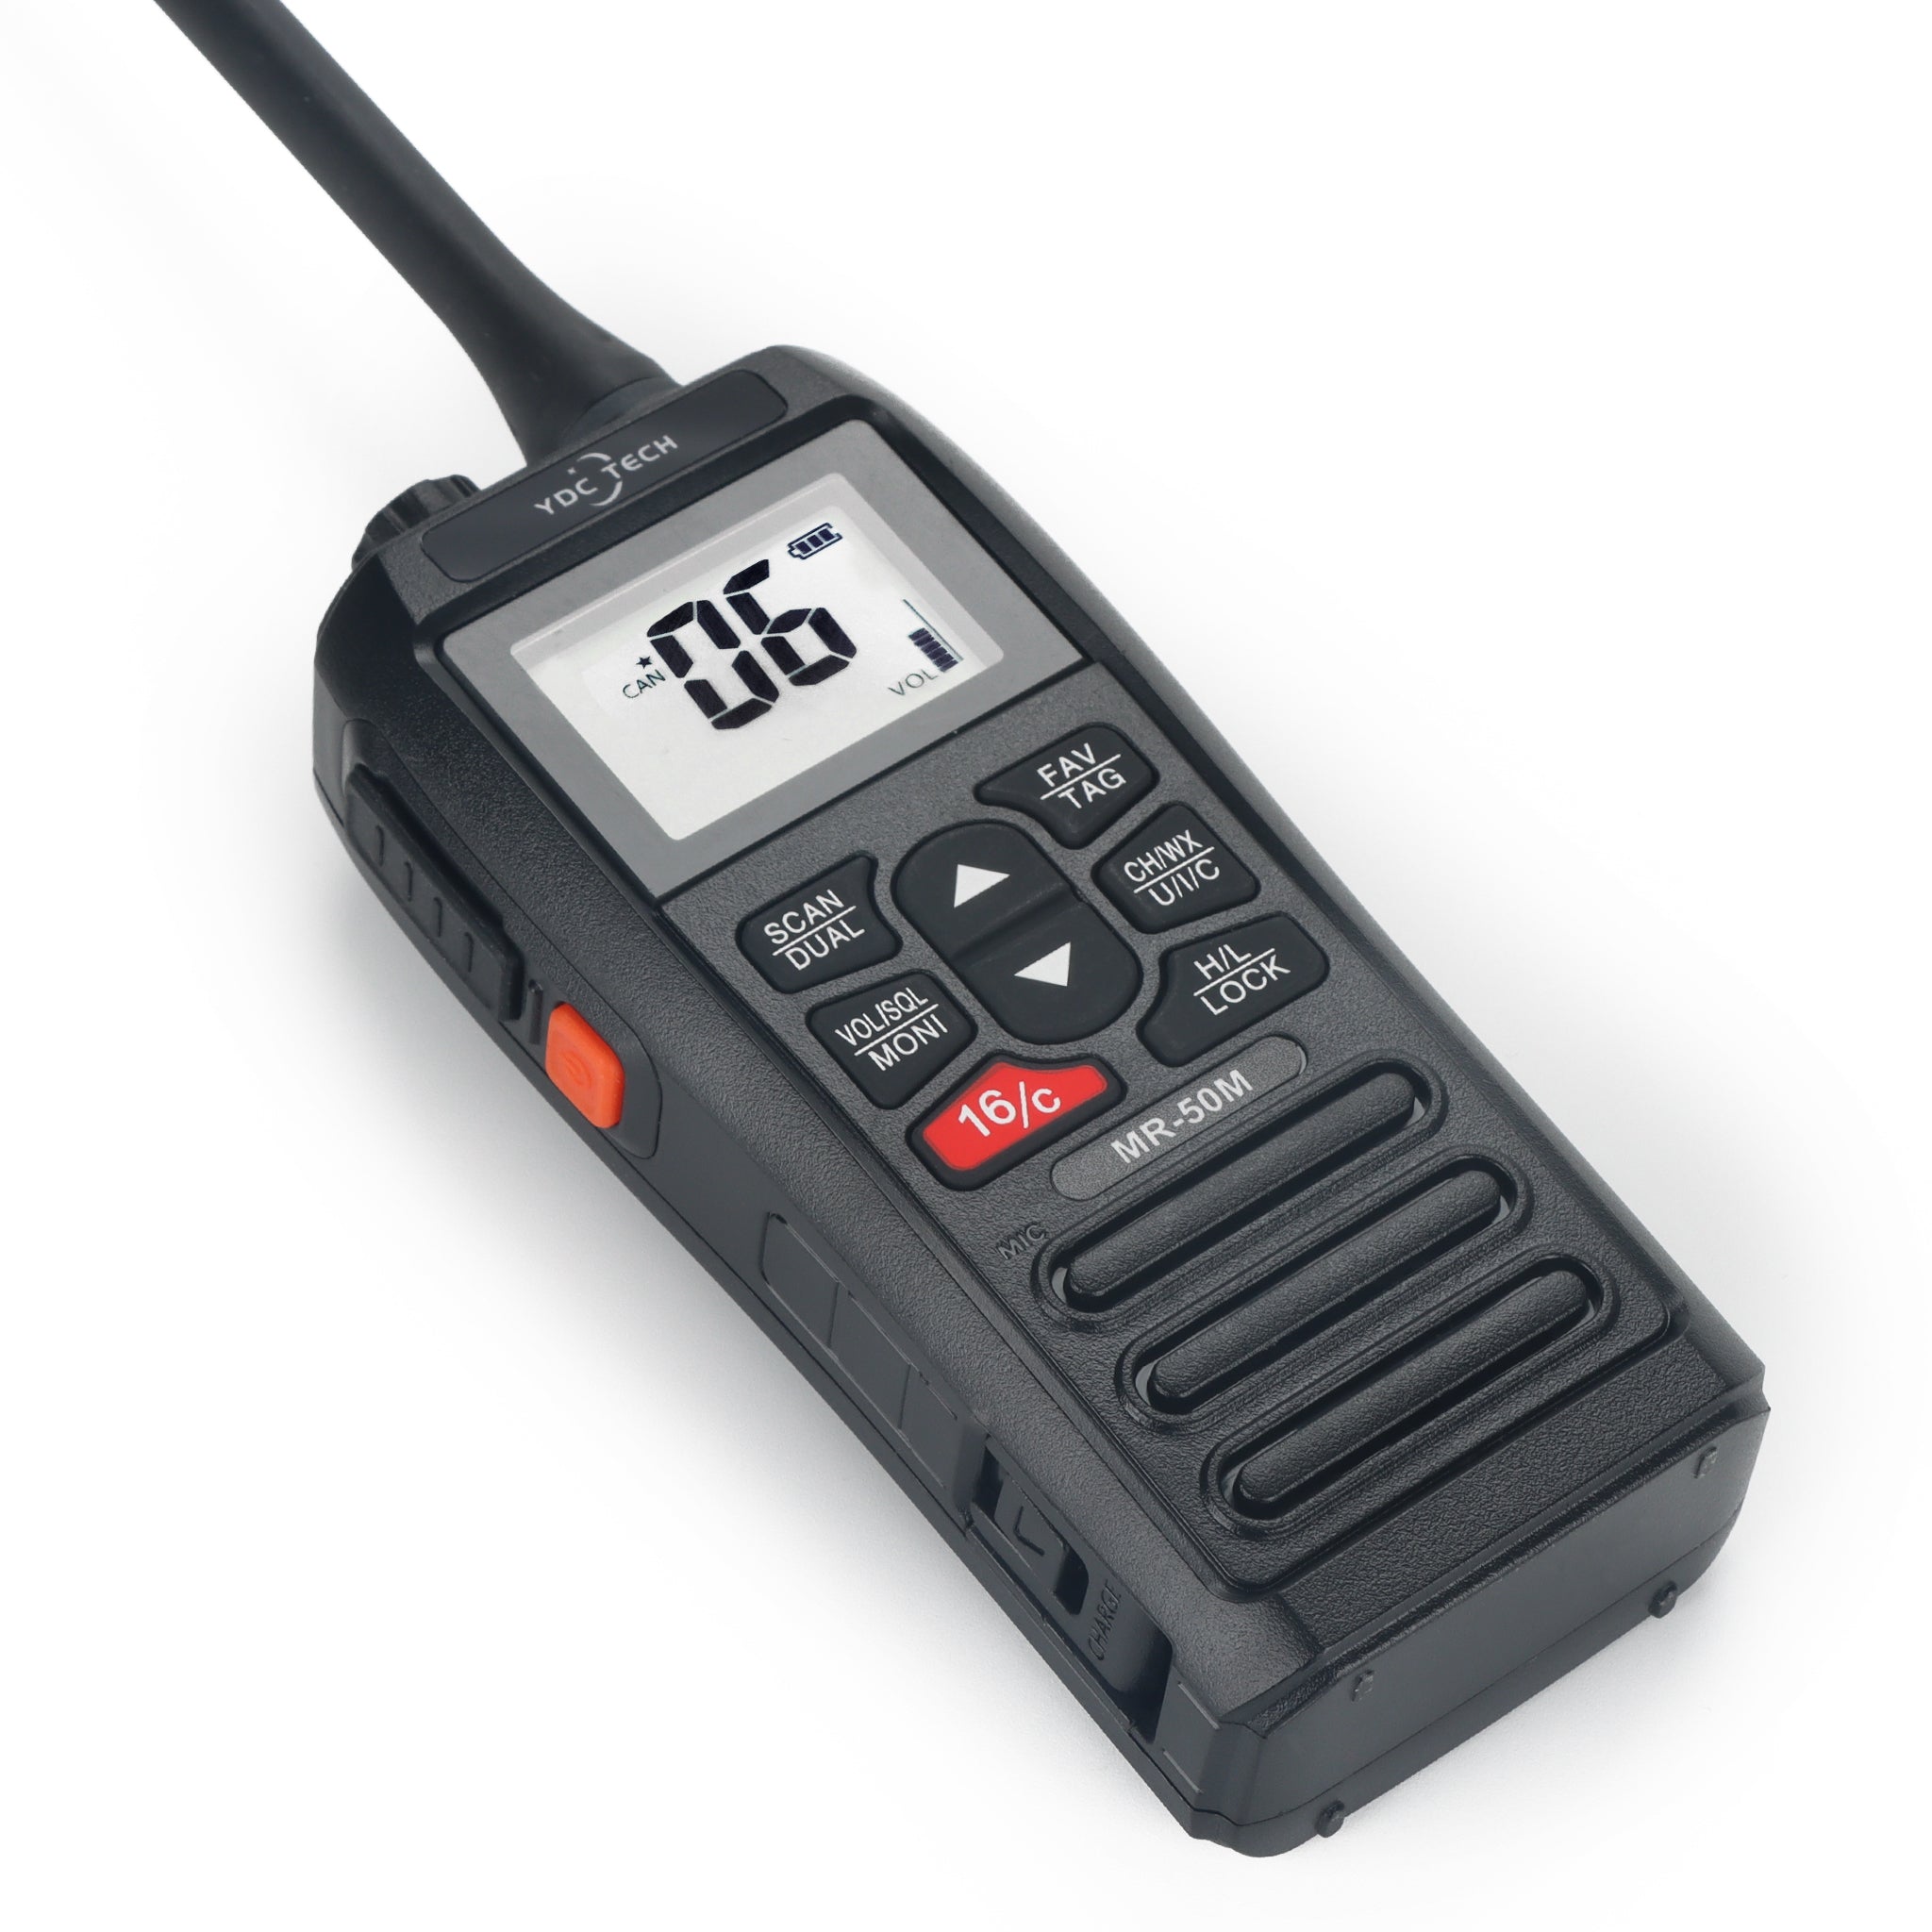 YDC TECH® MR-50M Handheld Waterproof VHF Marine Radio, Long Range, USB Charging, Floating, IPX7 Waterproof